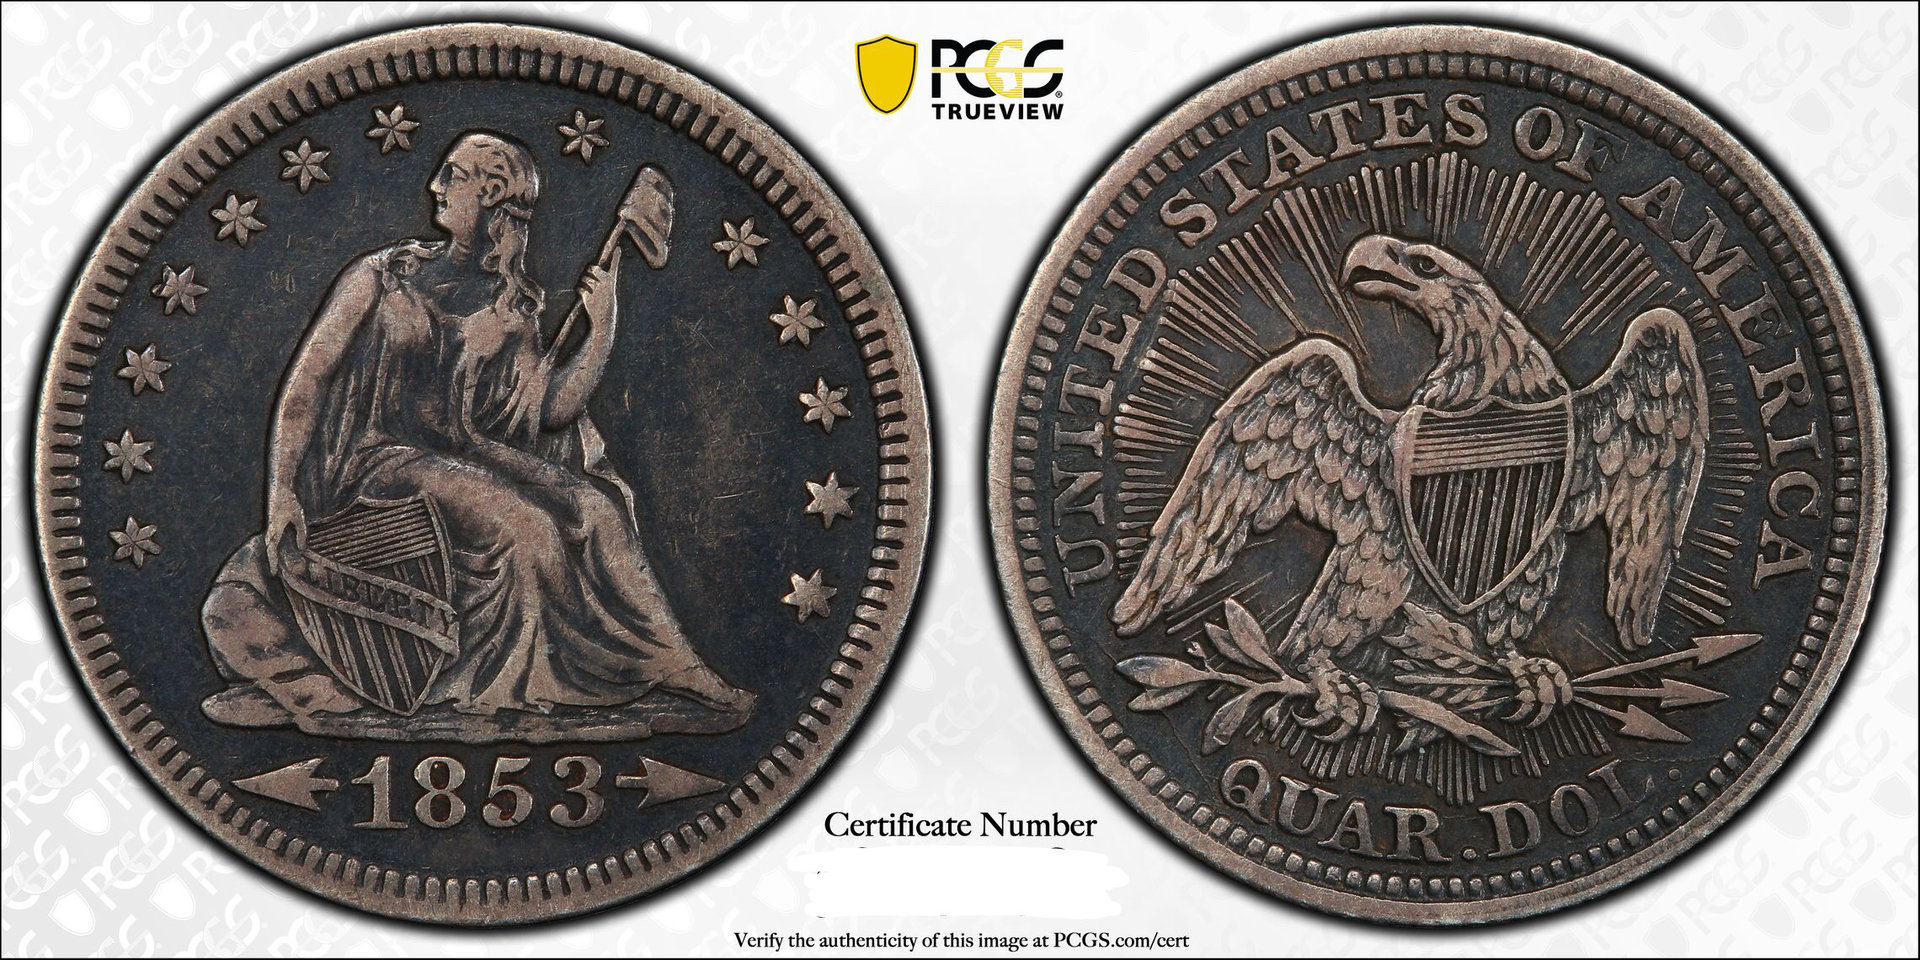 GTG - 1853 25c (Arrows & Rays) | Coin Talk